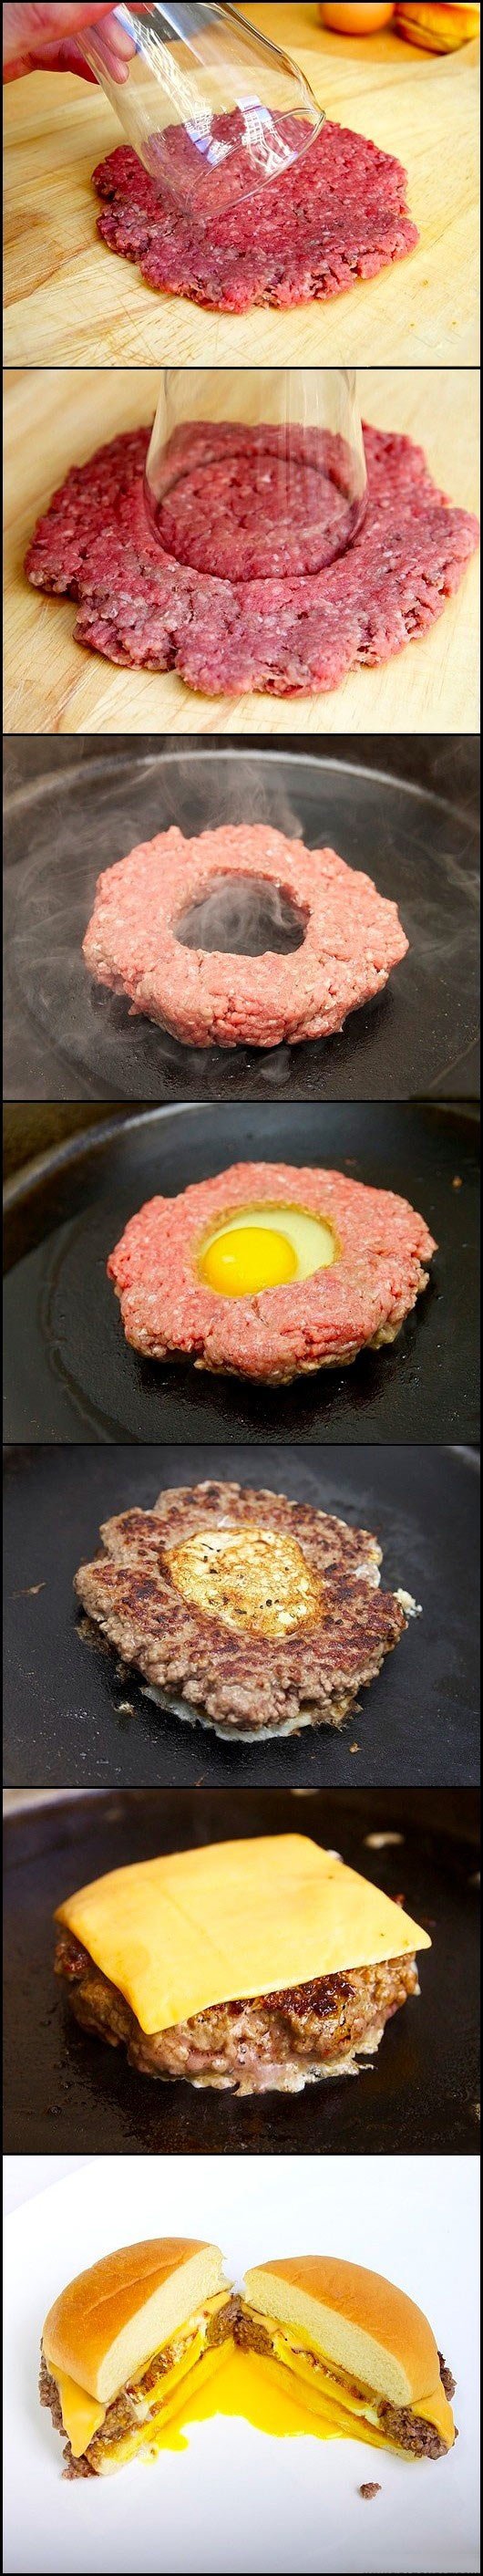 DIY eggalicious hamburger.